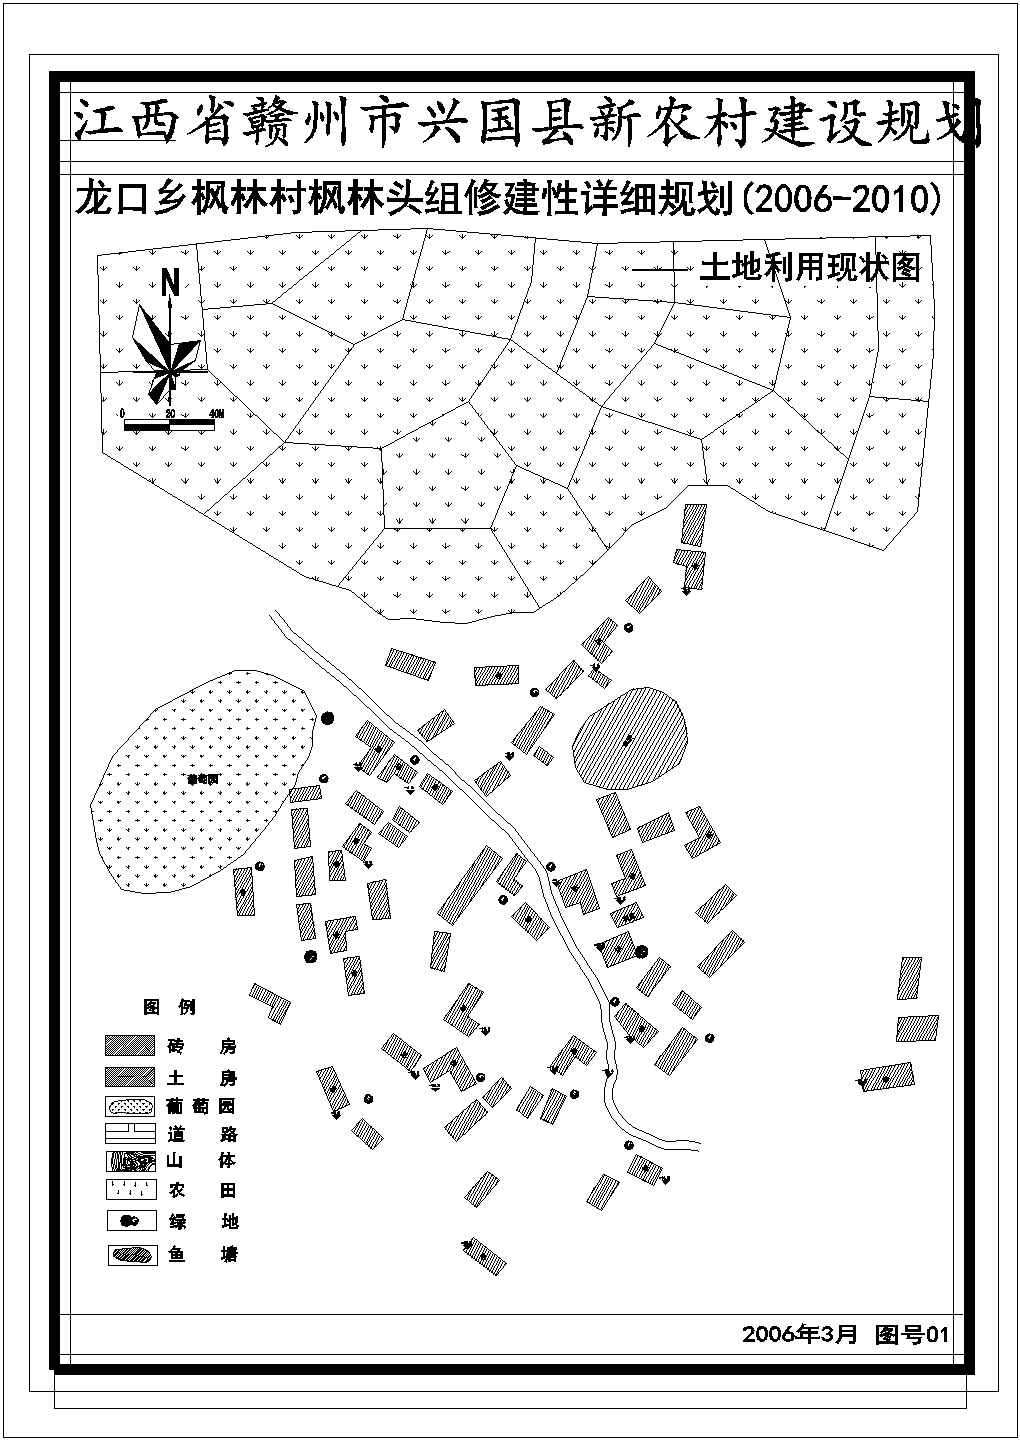 杭州某新农村住宅全套规划设计cad图(含规划总平面图)